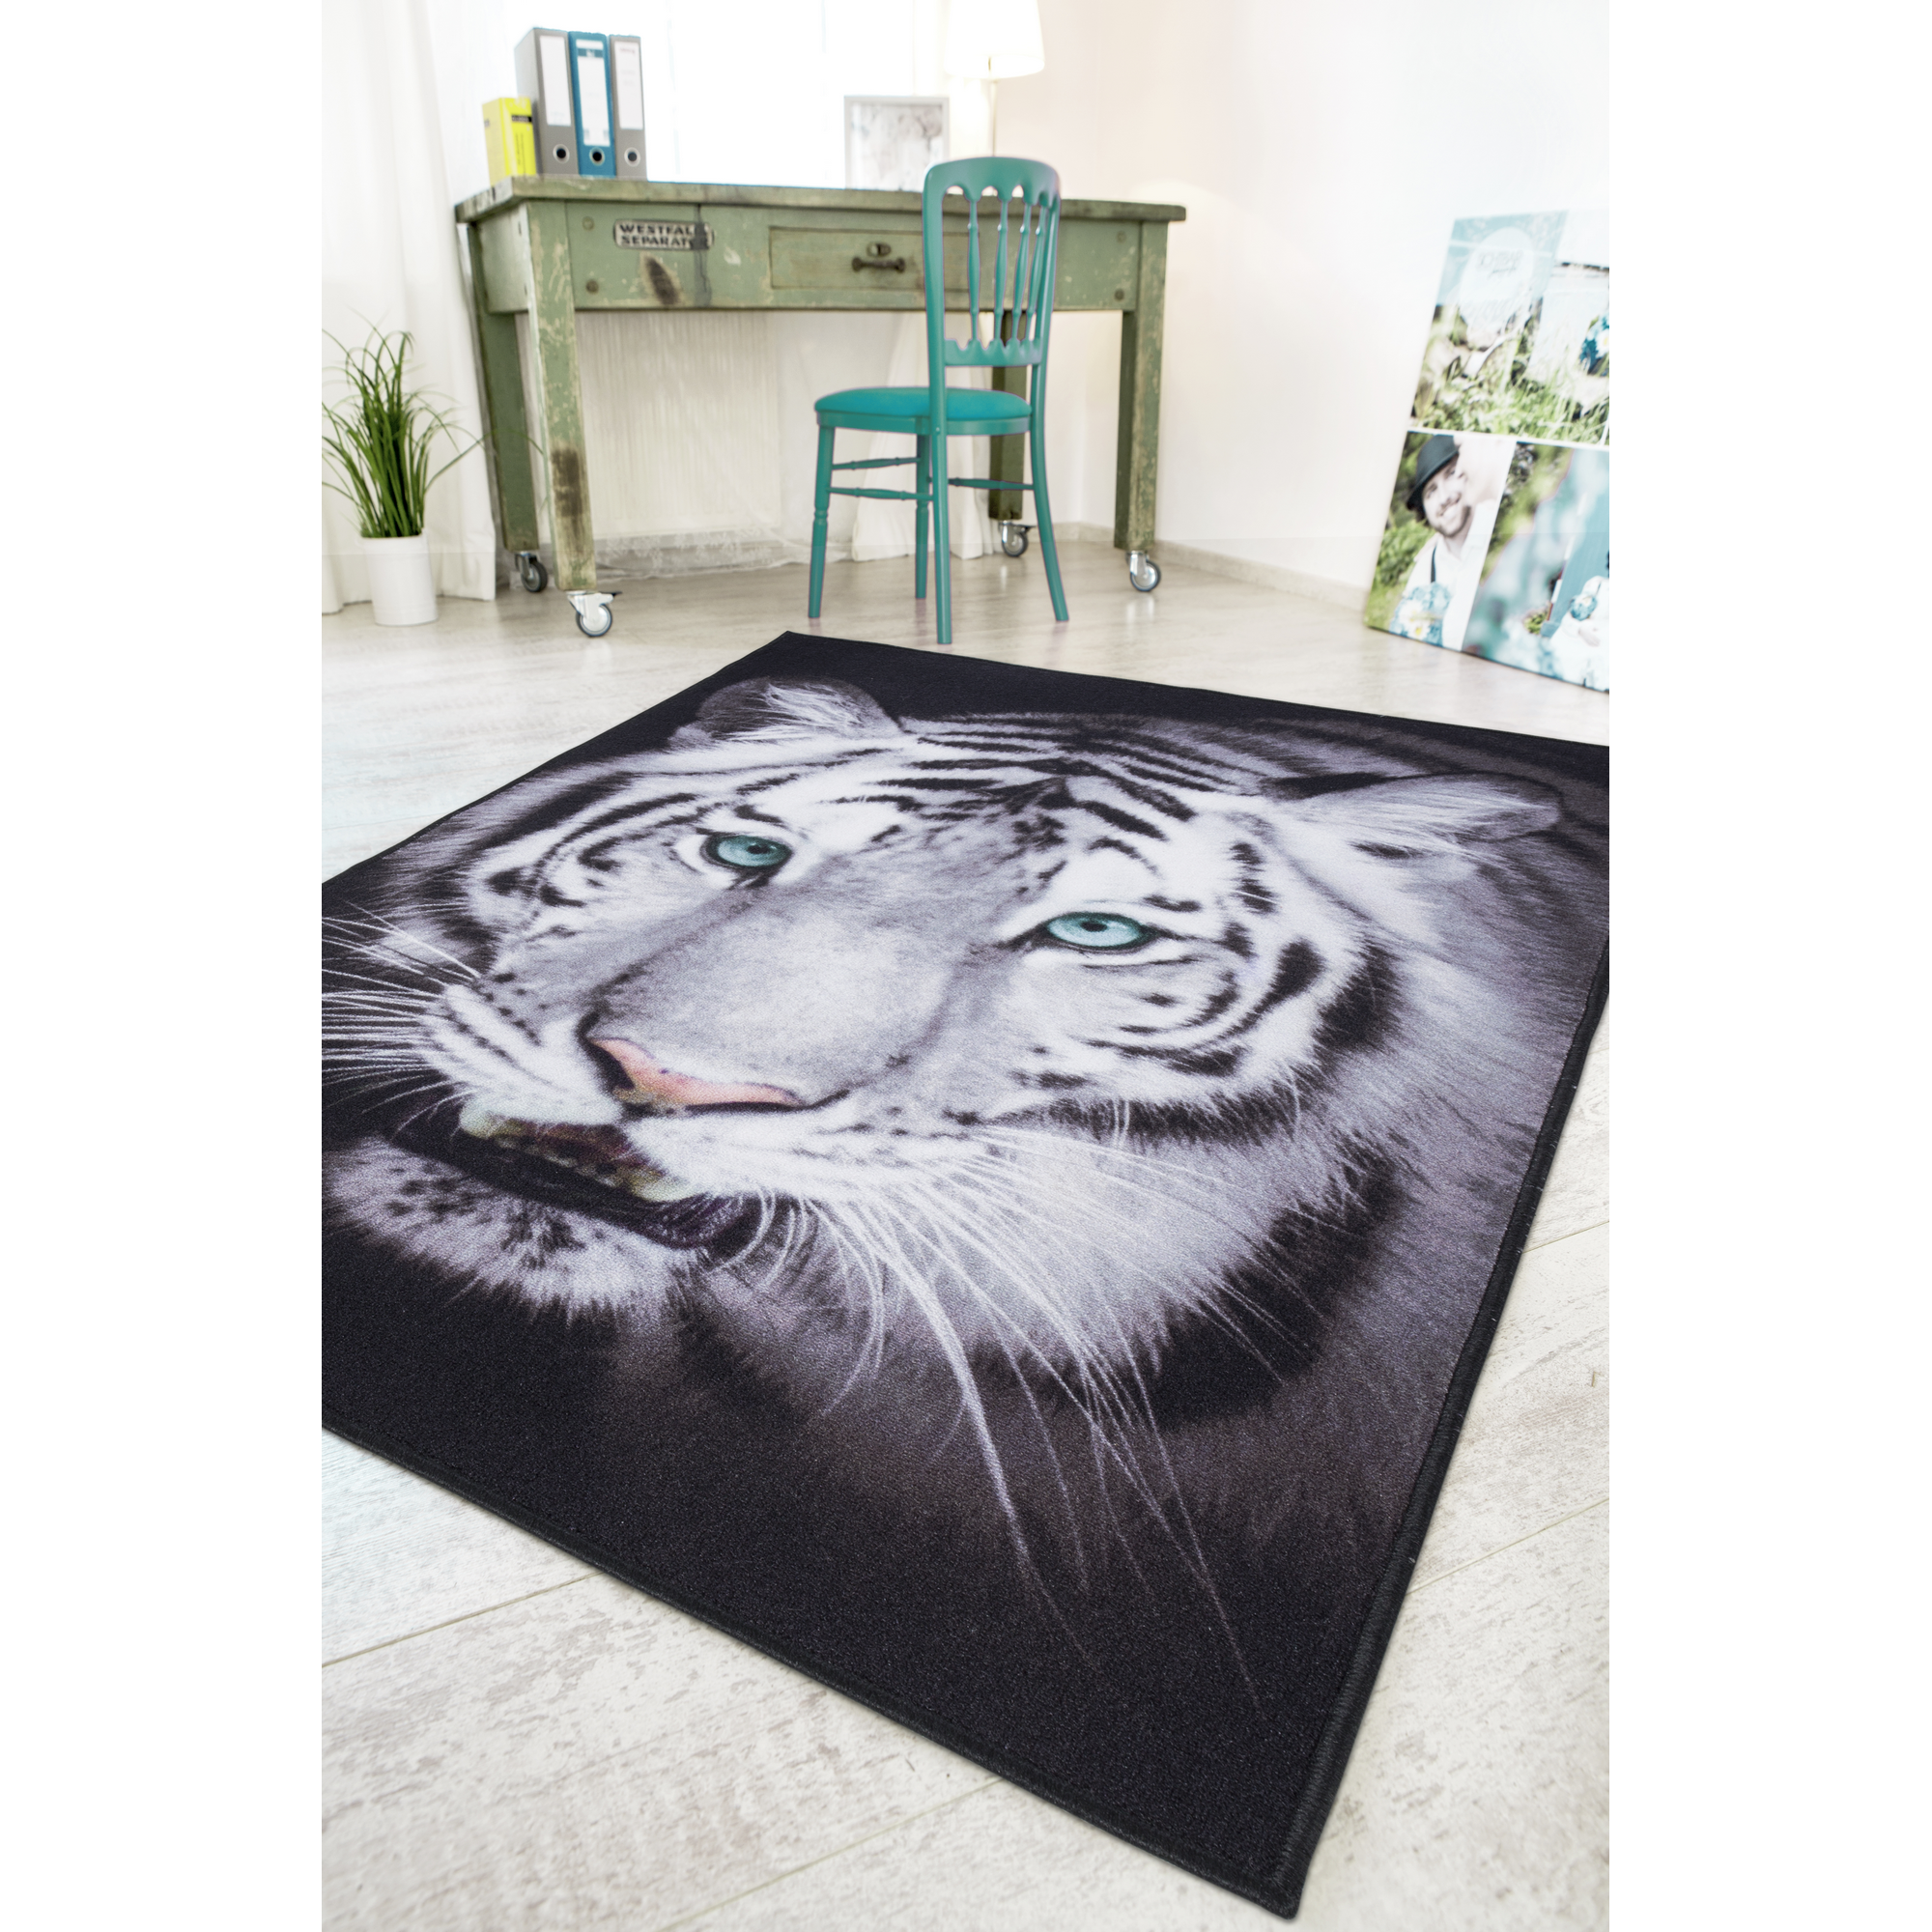 Teppich 'Tiger' schwarz/weiß 100 x 150 cm + product picture